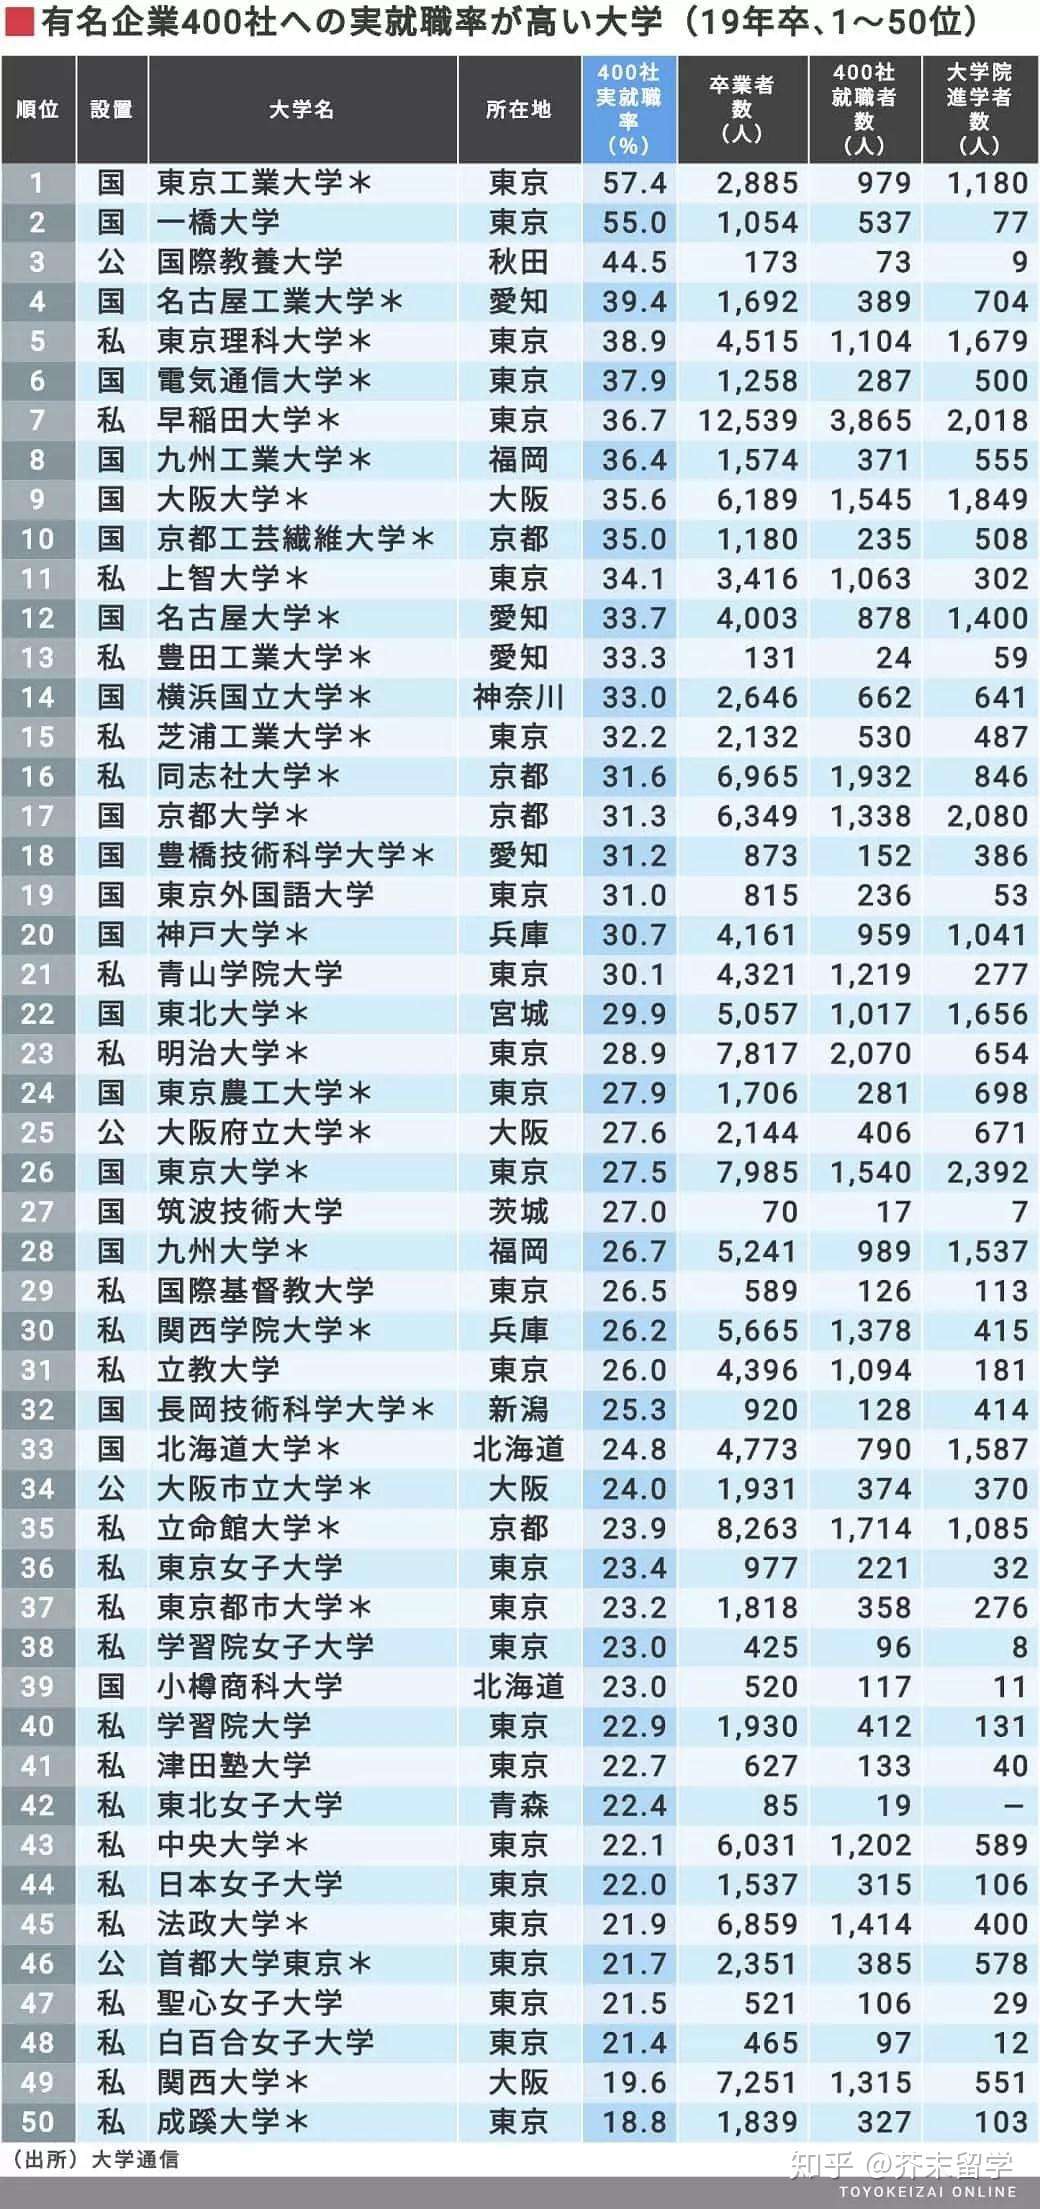 日本留学必看 最新排名名企就职率高的top0日本大学都是哪些 第1名是 知乎